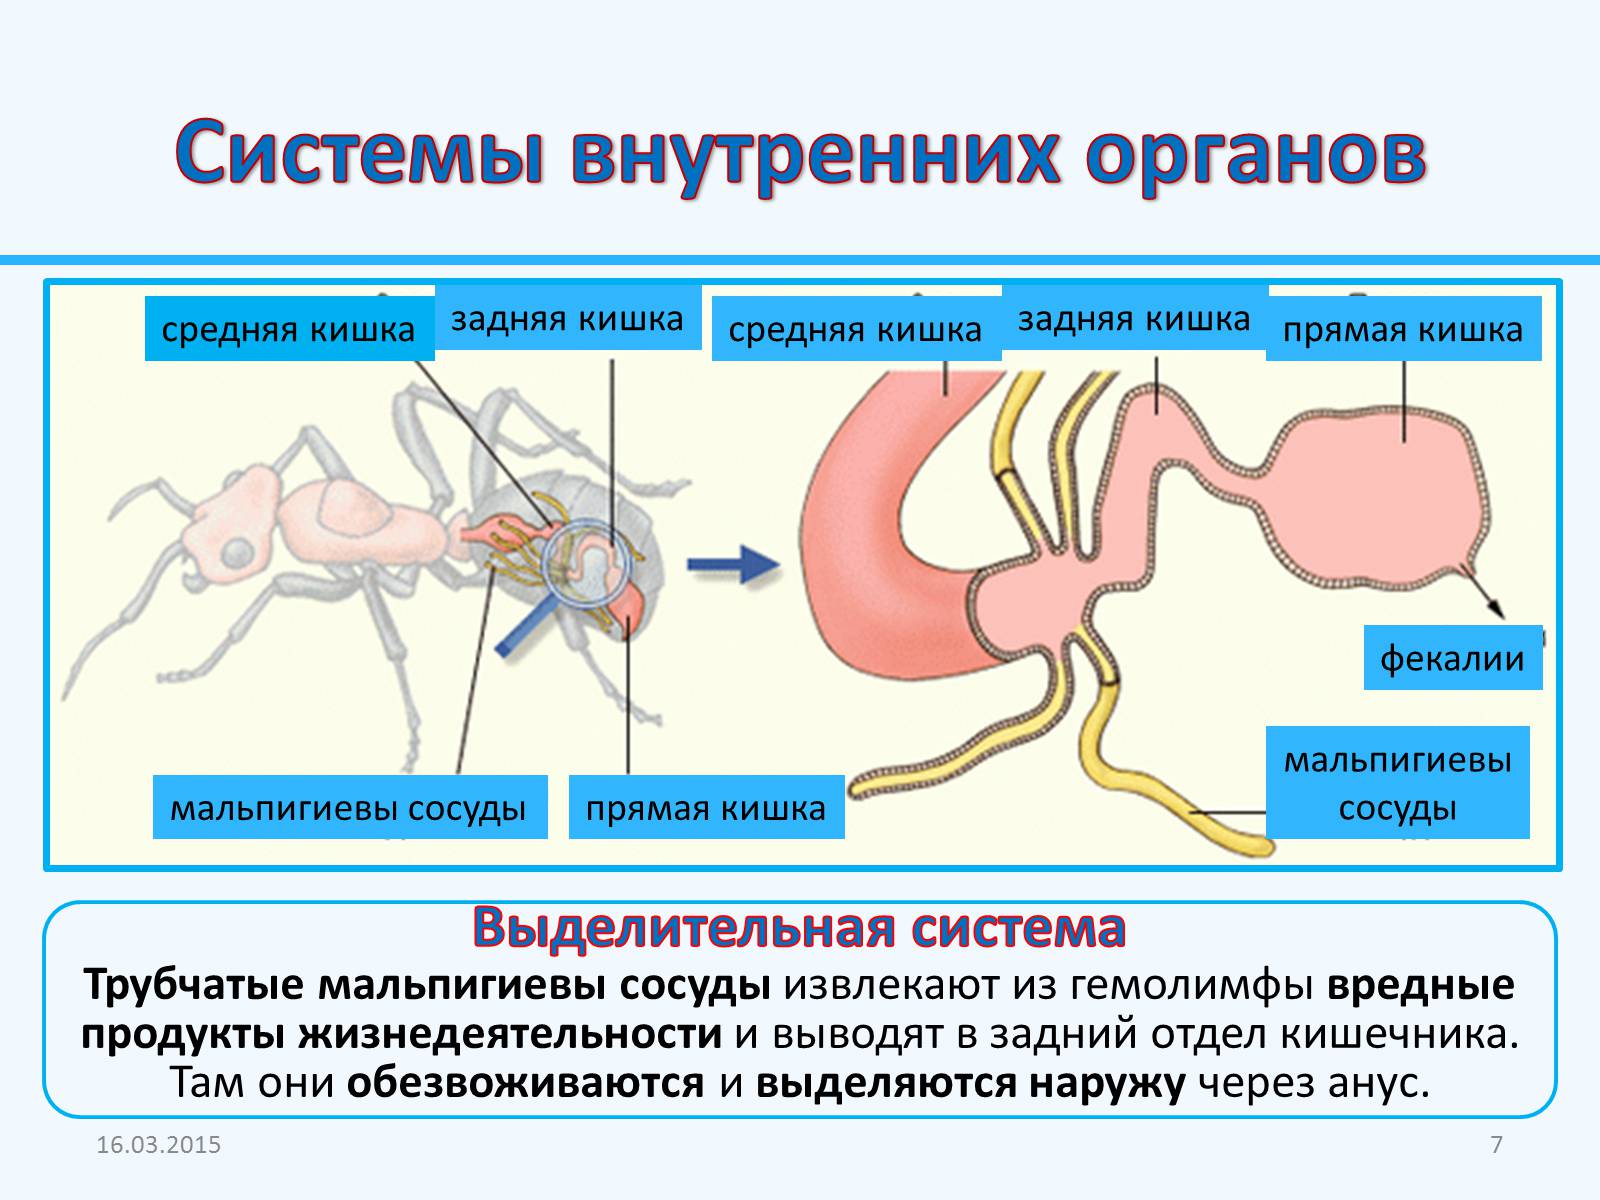 Какая функция у мальпигиевых сосудов. Мальпигиевы сосуды система органов. Выделительная система насекомых. Выделительная система представлена мальпигиевыми сосудами. Органы выделения мальпигиевы сосуды.